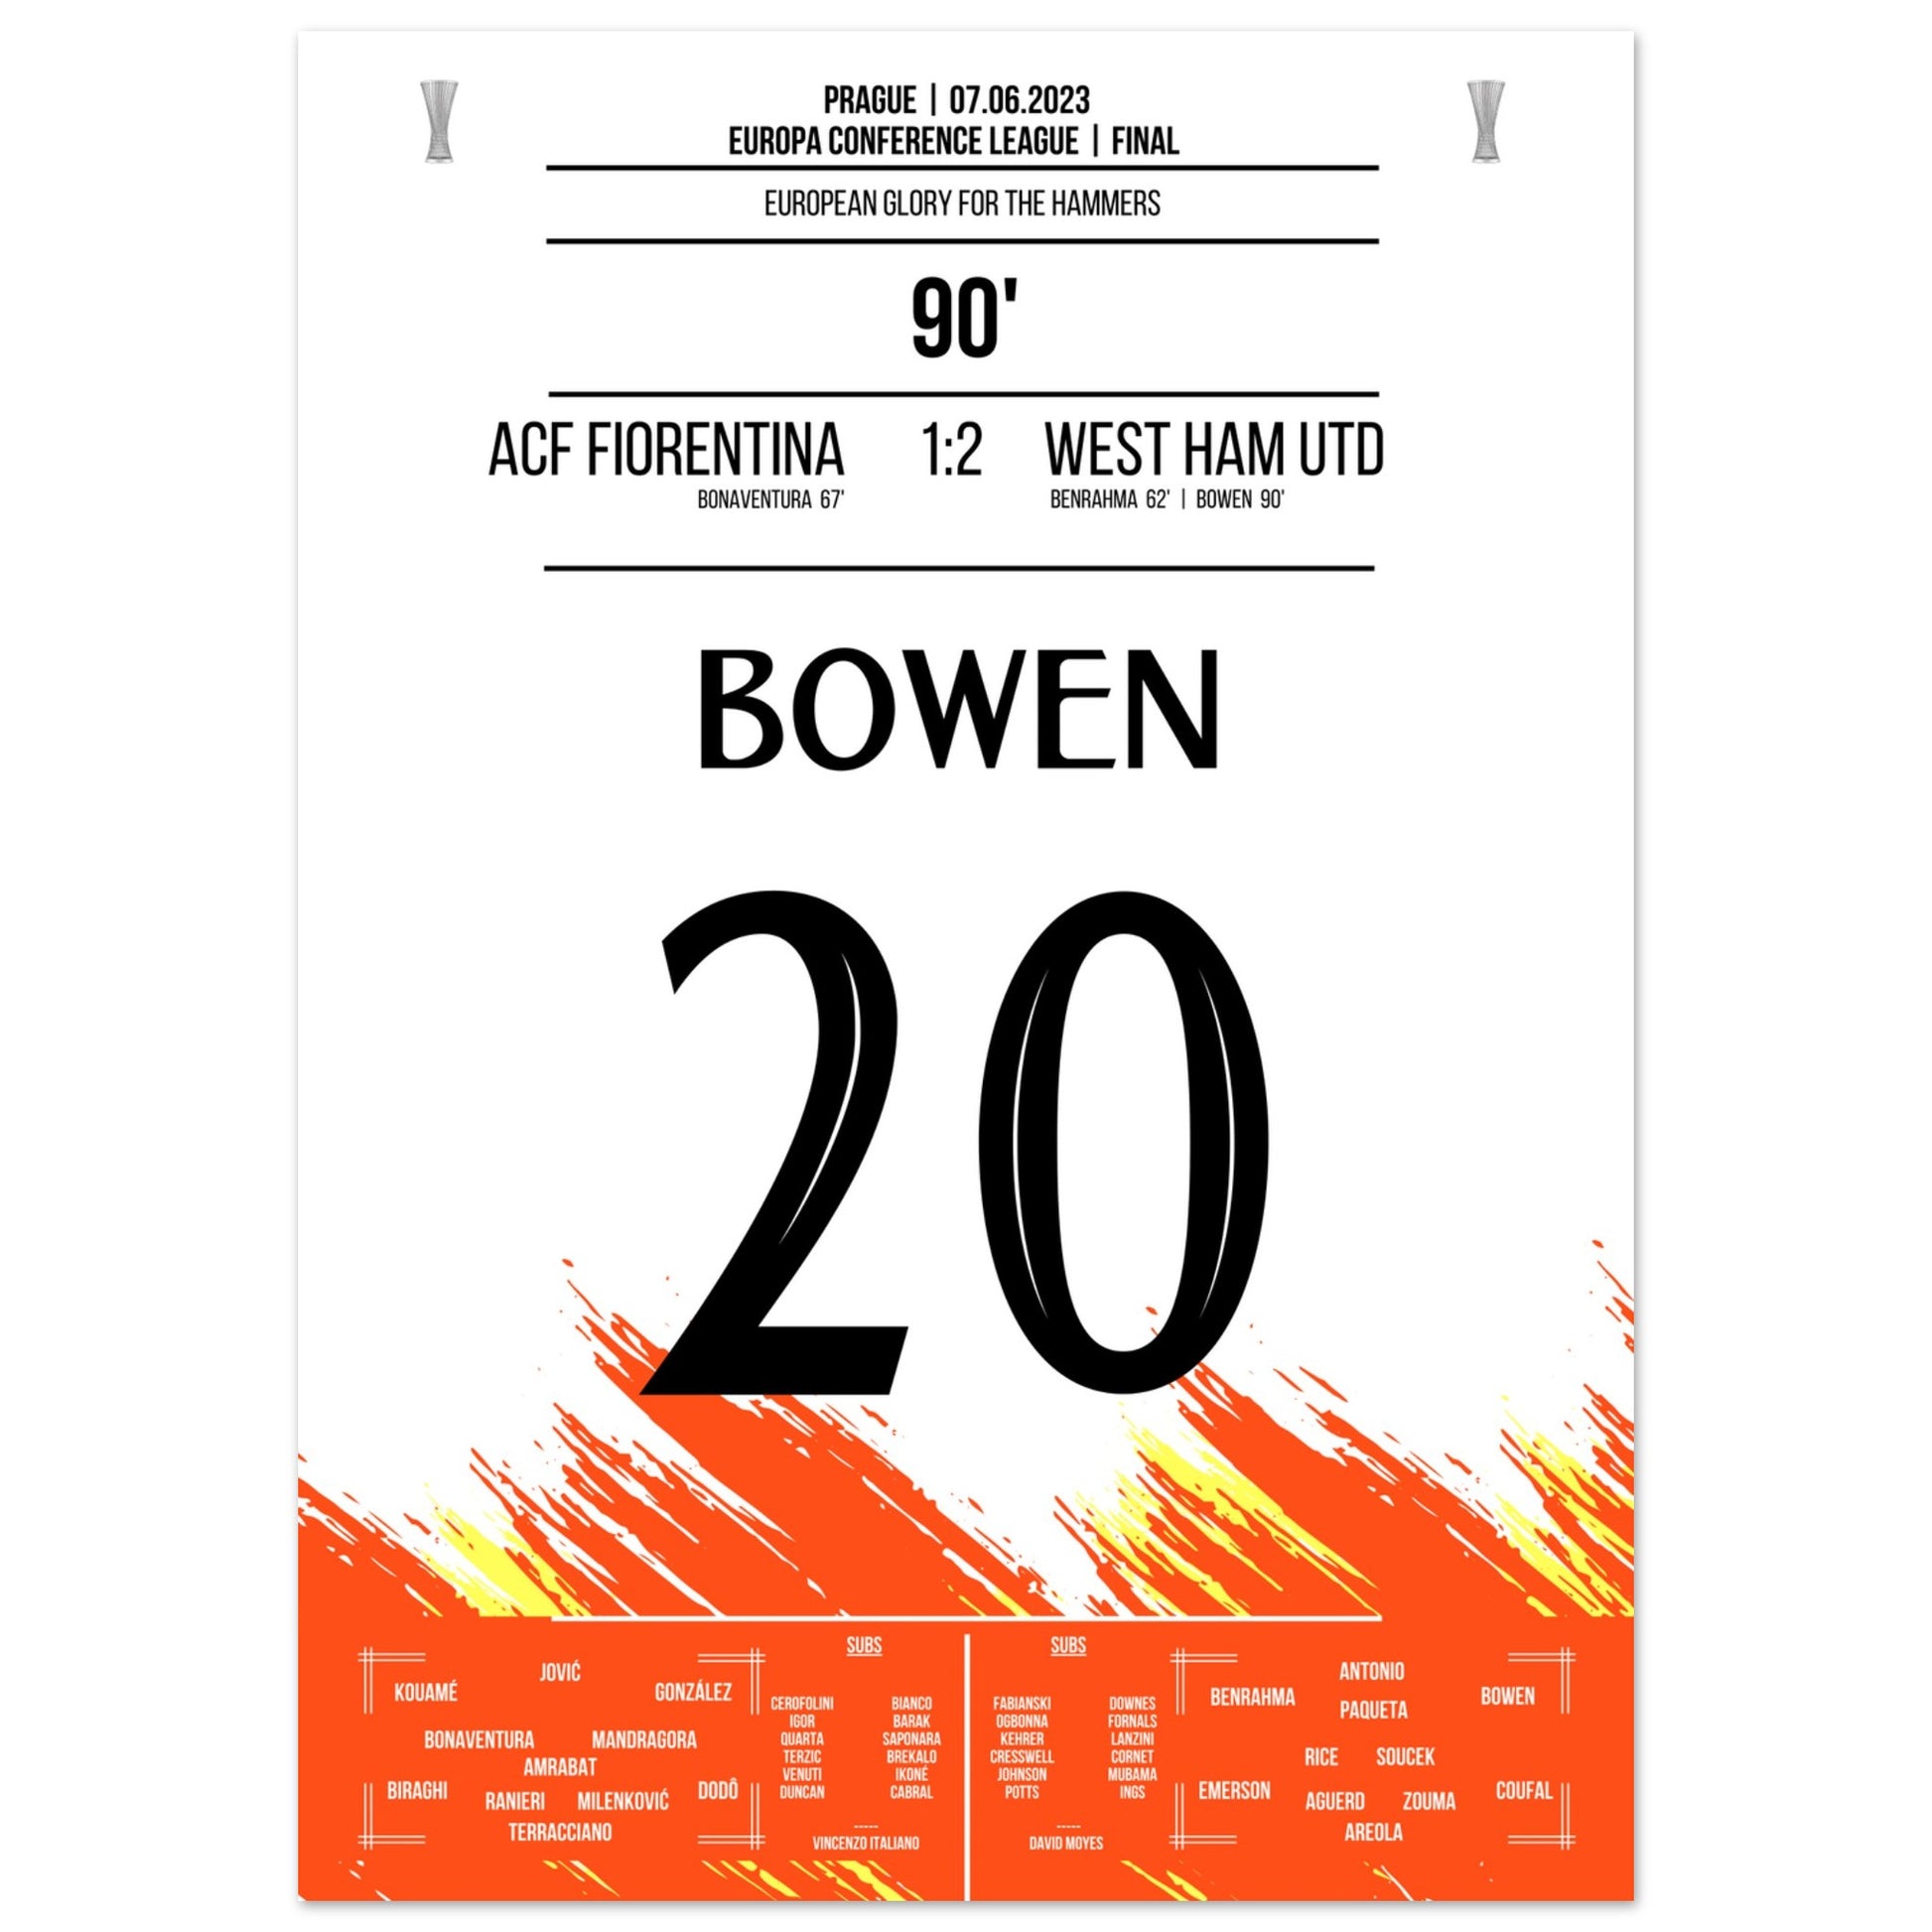 Bowen's Last-Minute Siegtreffer zum Europapokal Triumph für die "Hammers" 50x70-cm-20x28-Ohne-Rahmen